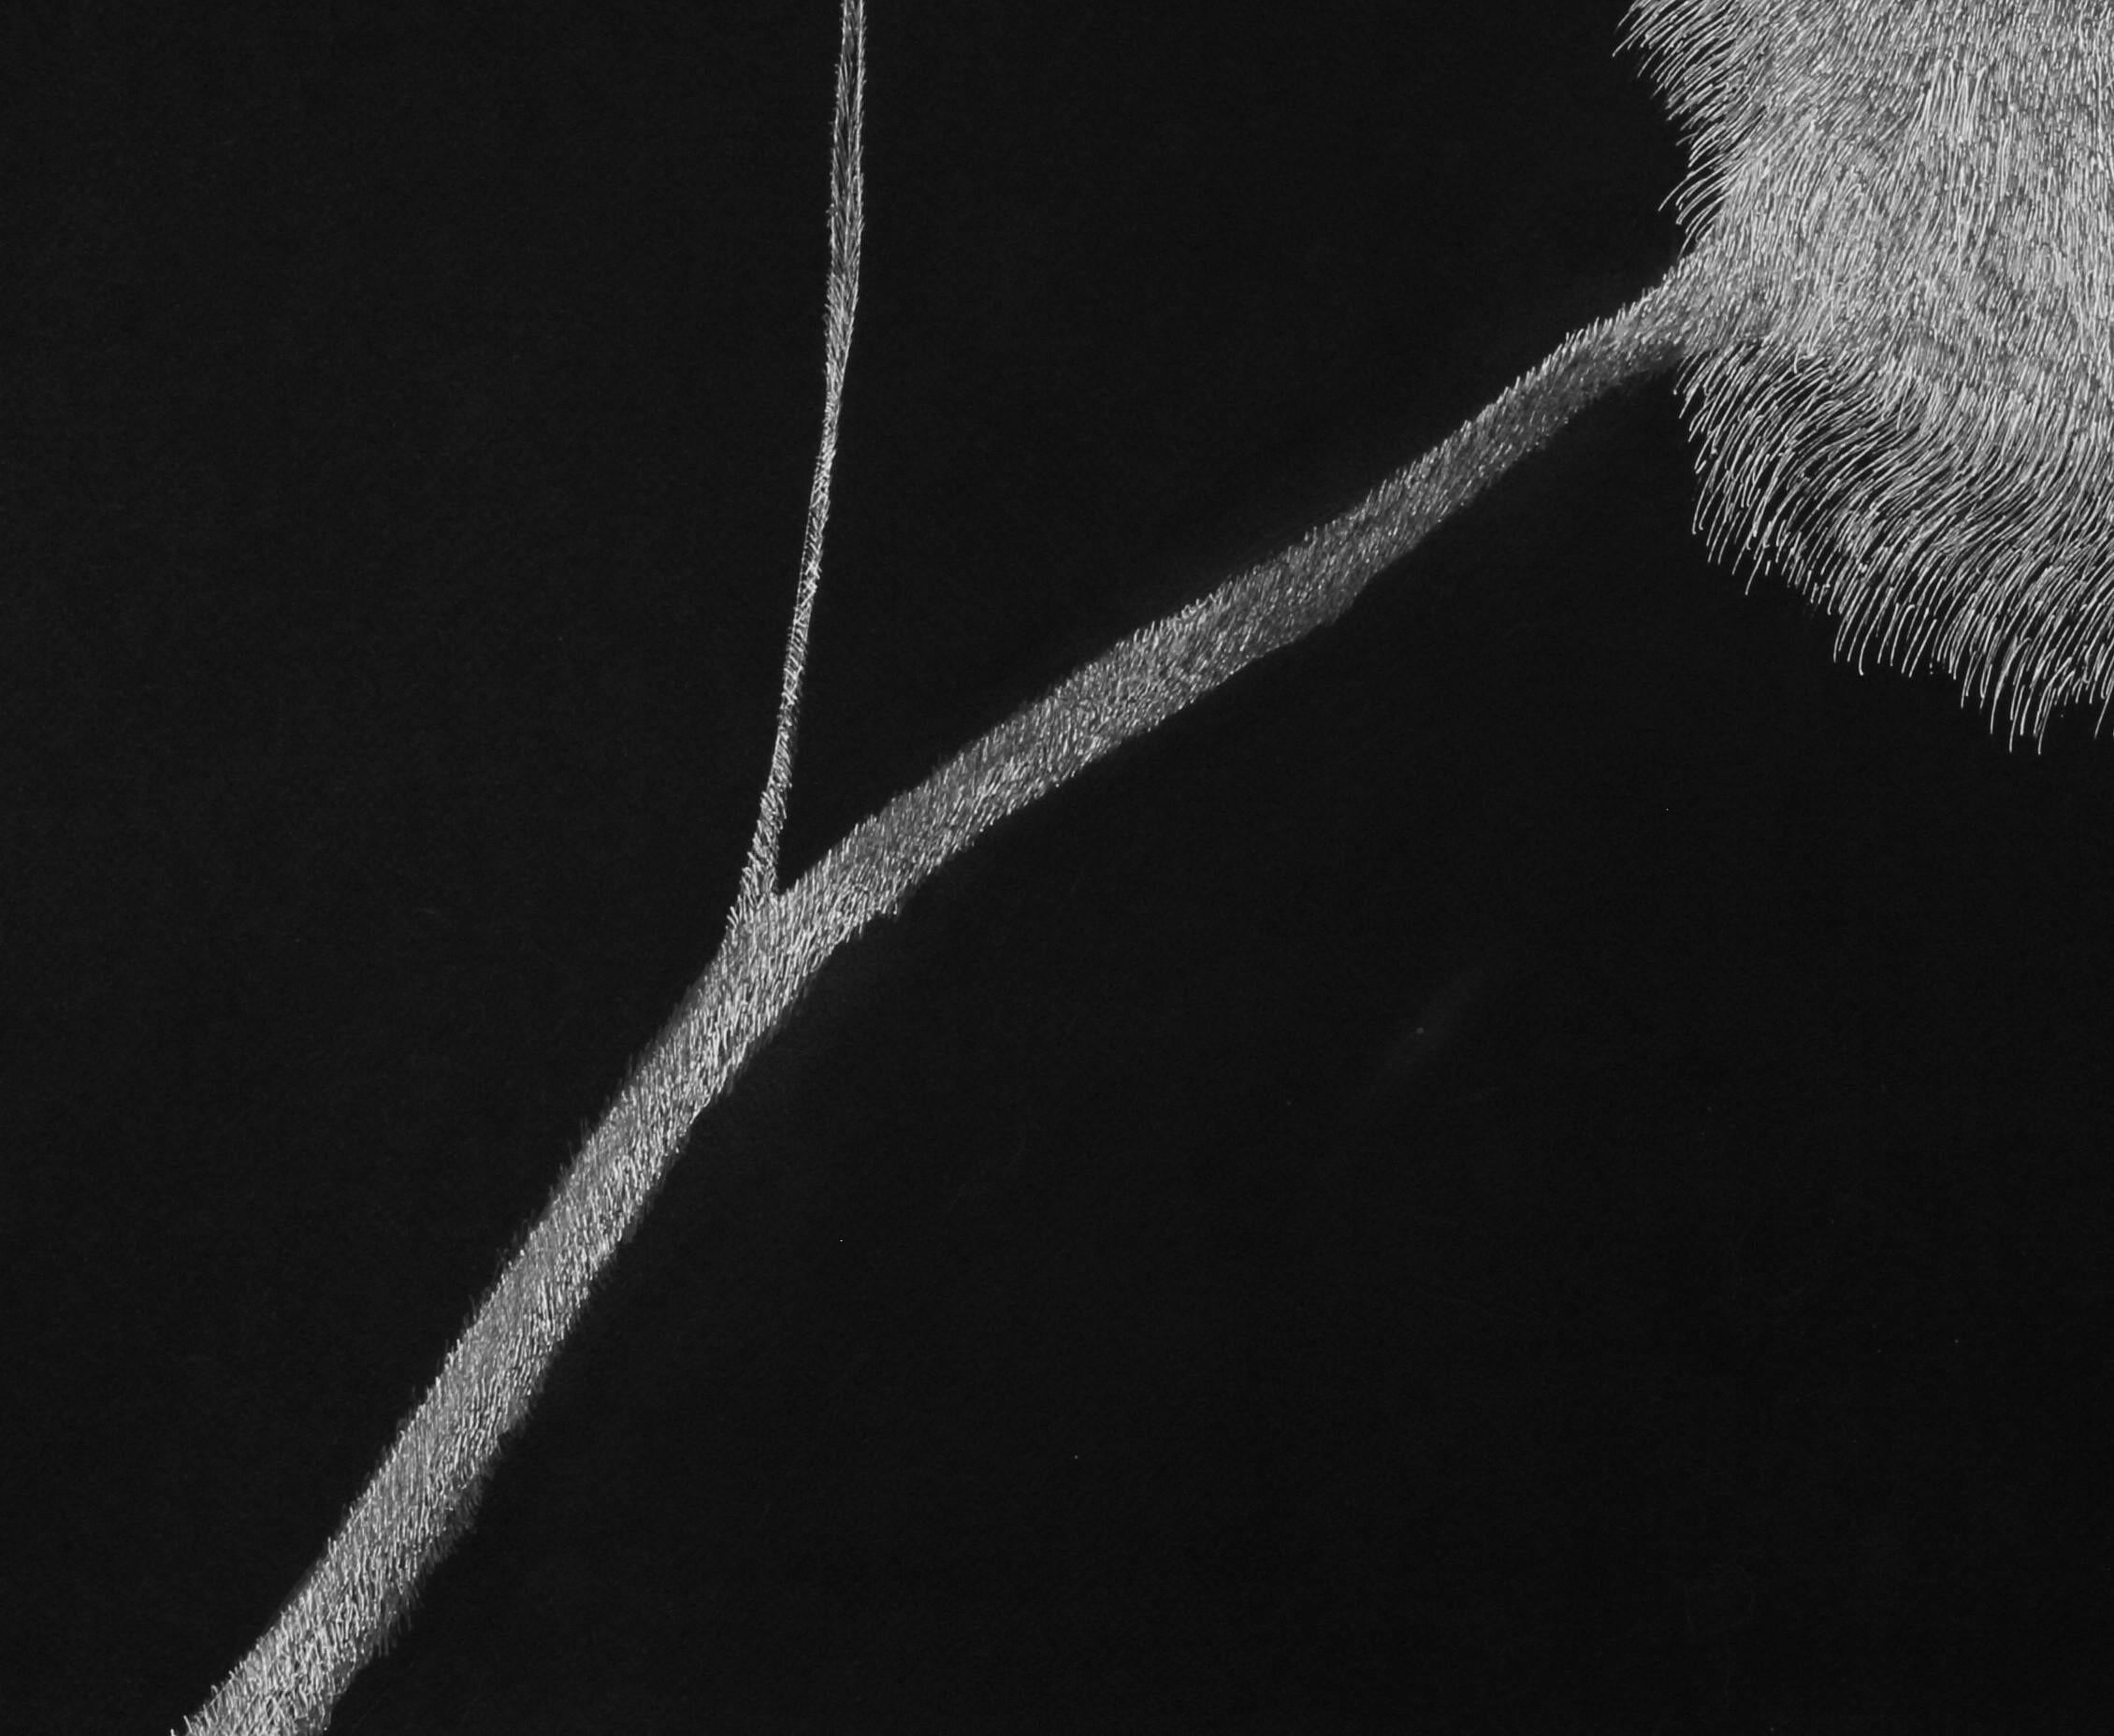 Geheimer Garten 12, 2020
weiße Tinte auf schwarzem Karton
27 9/16 H x 39 3/8 W Zoll.
70 H x 100 B cm

Die von Alina Aldea signierten Zeichnungen zeigen die Akribie und Perfektion der mikroskopischen Beobachtung. Die Kreation von Alina Aldea wird von